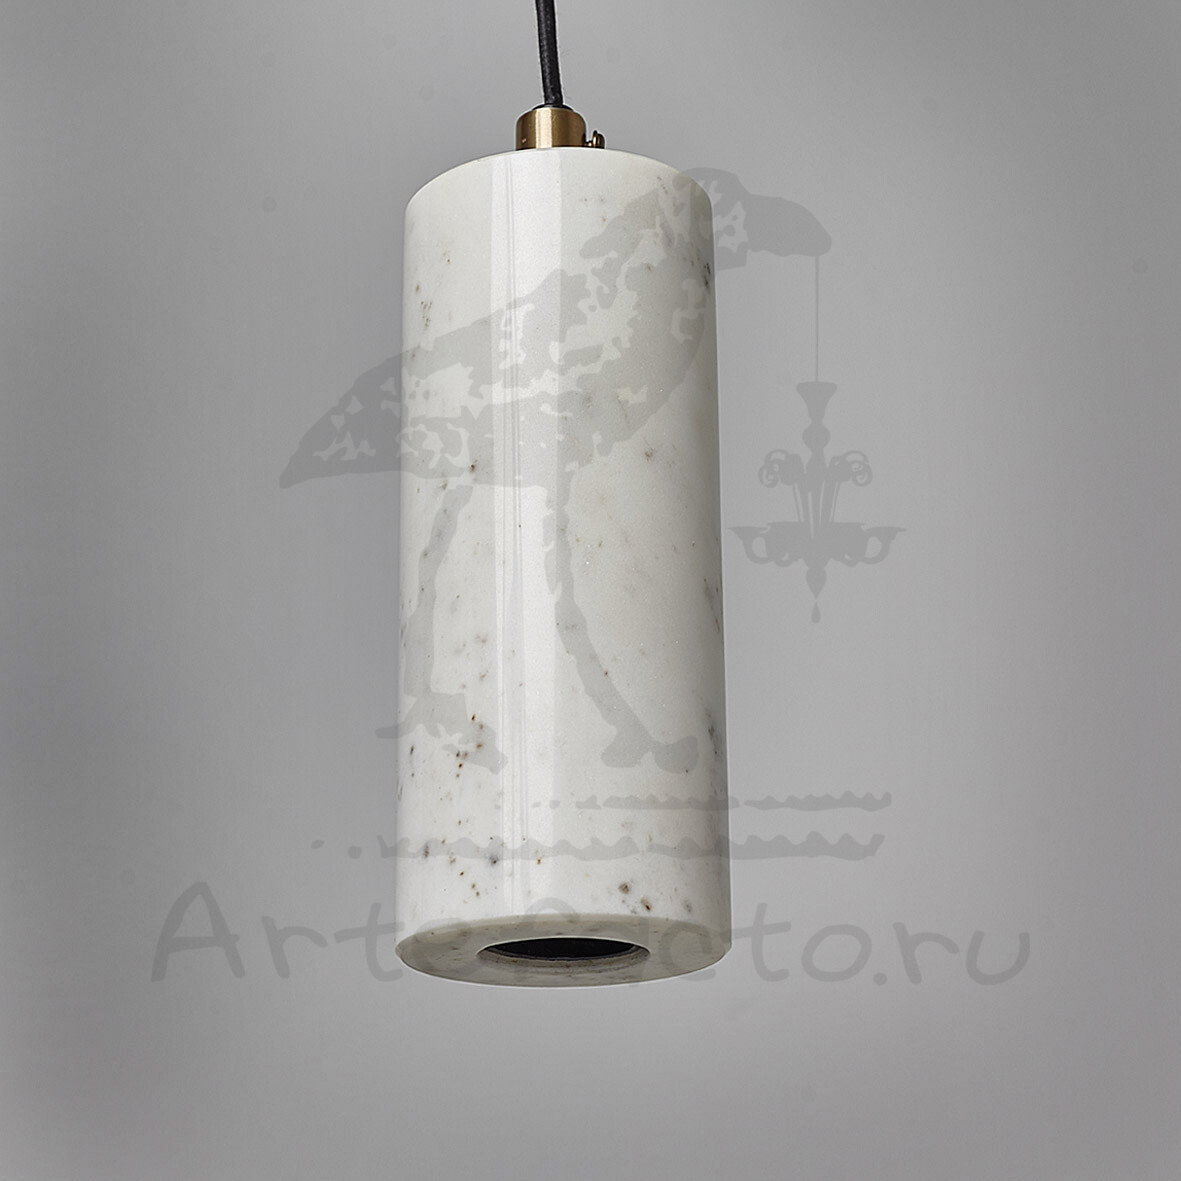 Подвесной светильник из белого мрамора в форме цилиндра